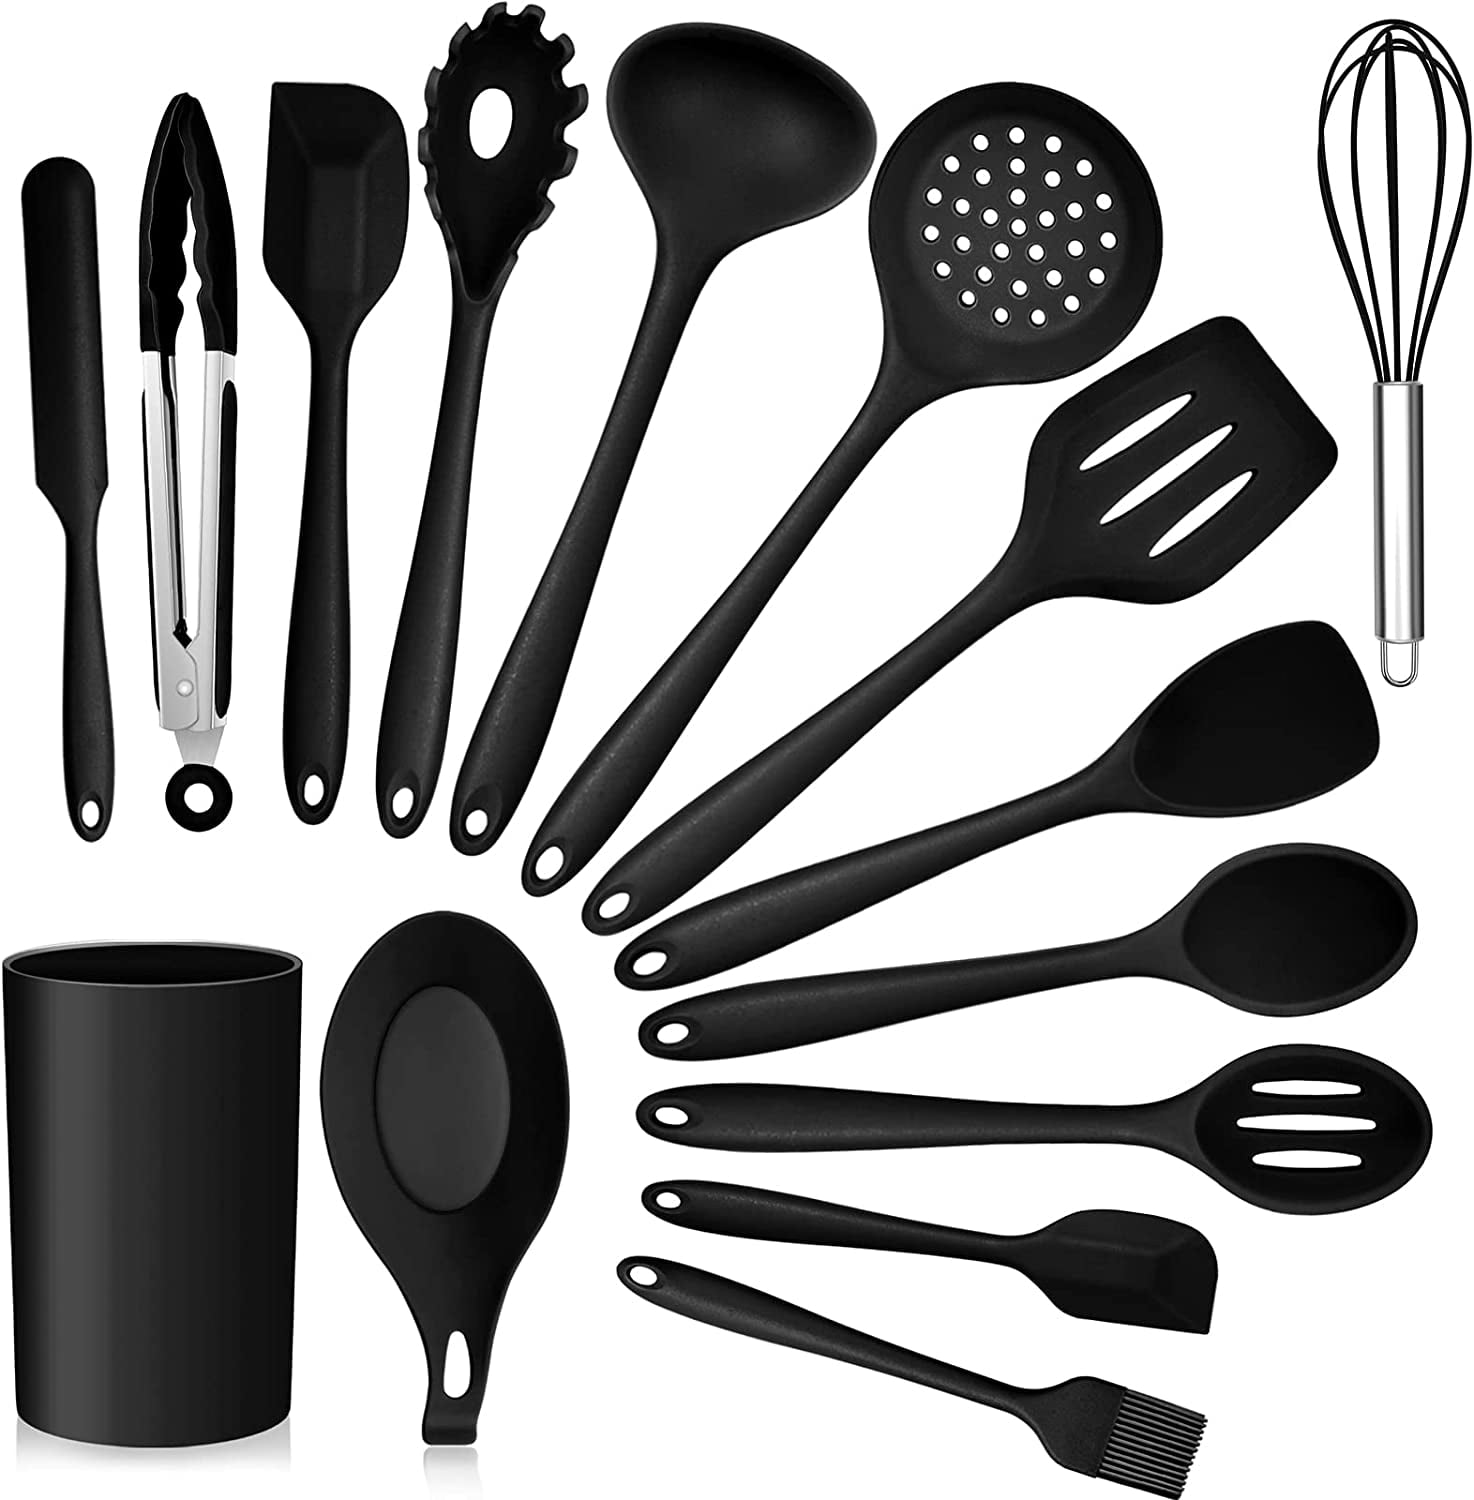 MagicKit kitchen utensils set, 15 pcs silicone cooking utensil set